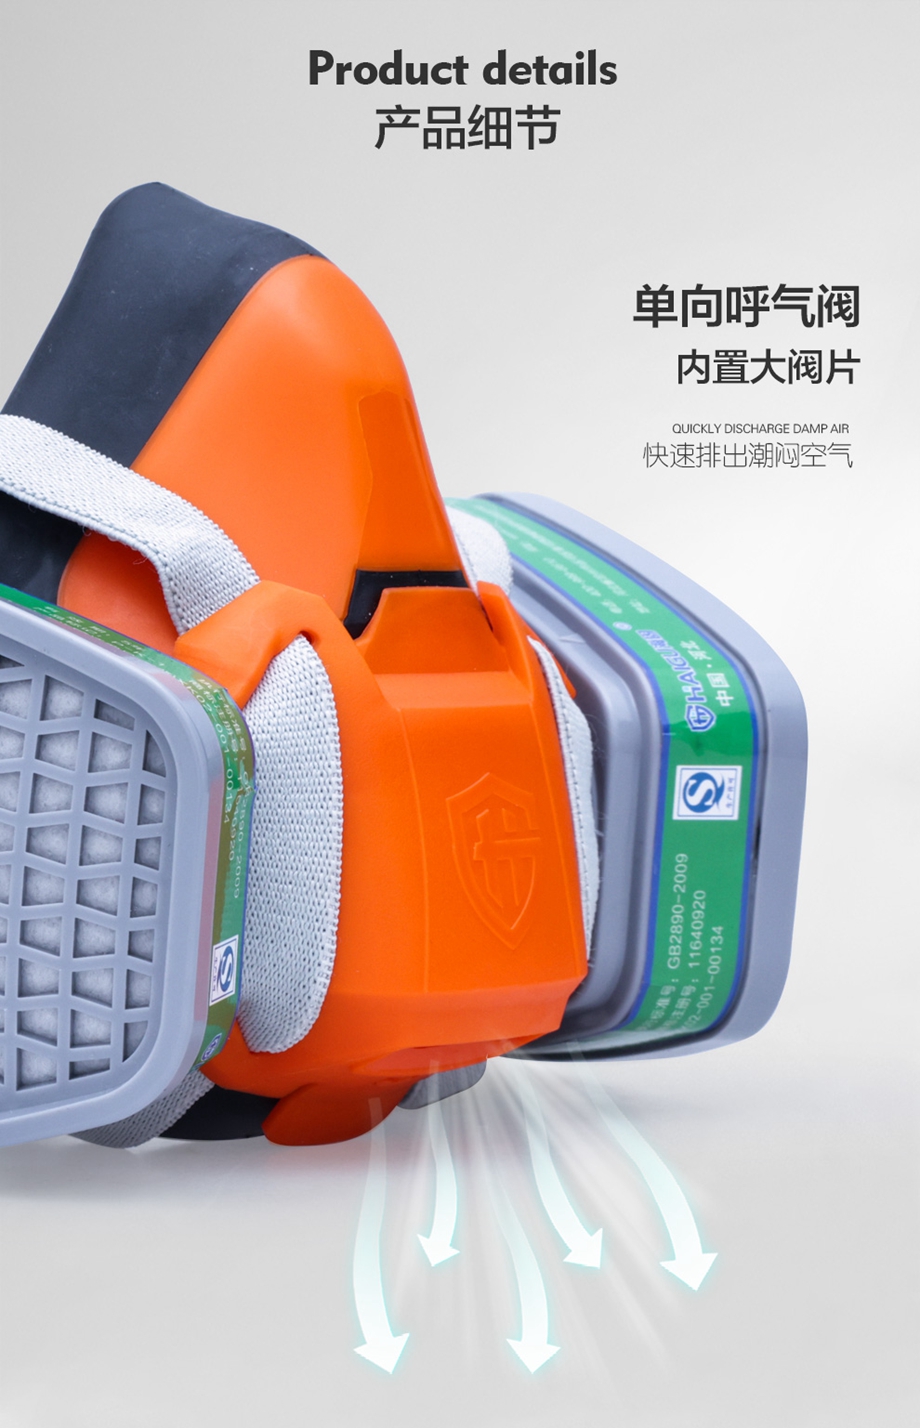 氨气防毒面具套装-海固602半面罩+K型4号滤毒盒 氨气防毒面具